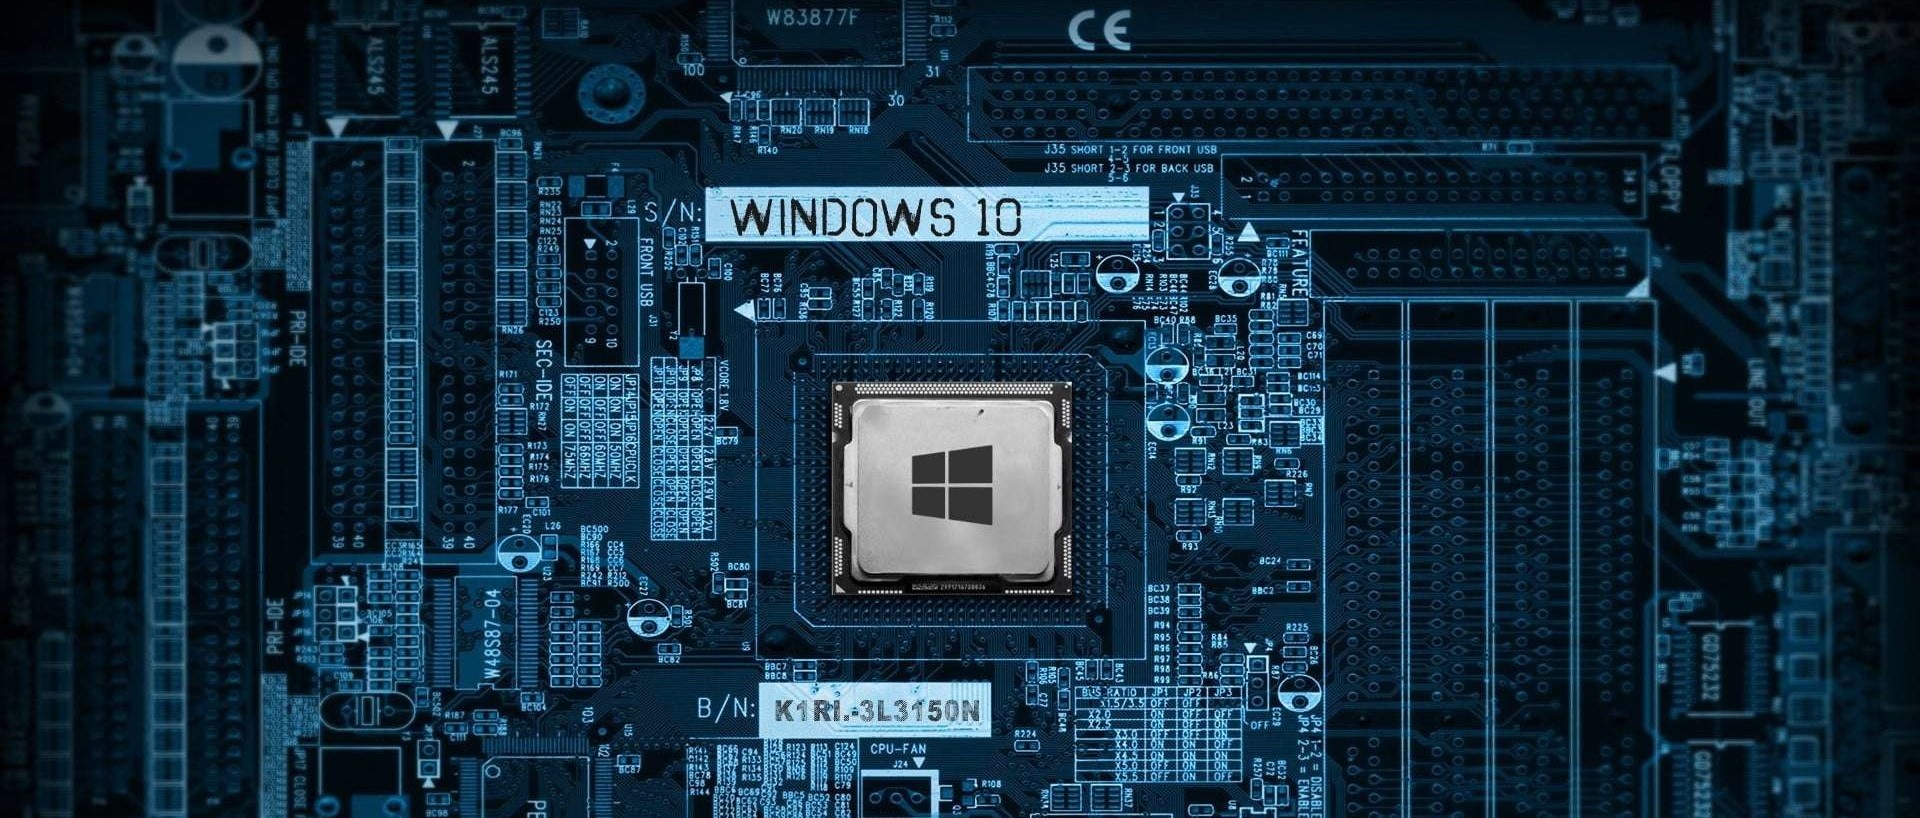 windows common terminology